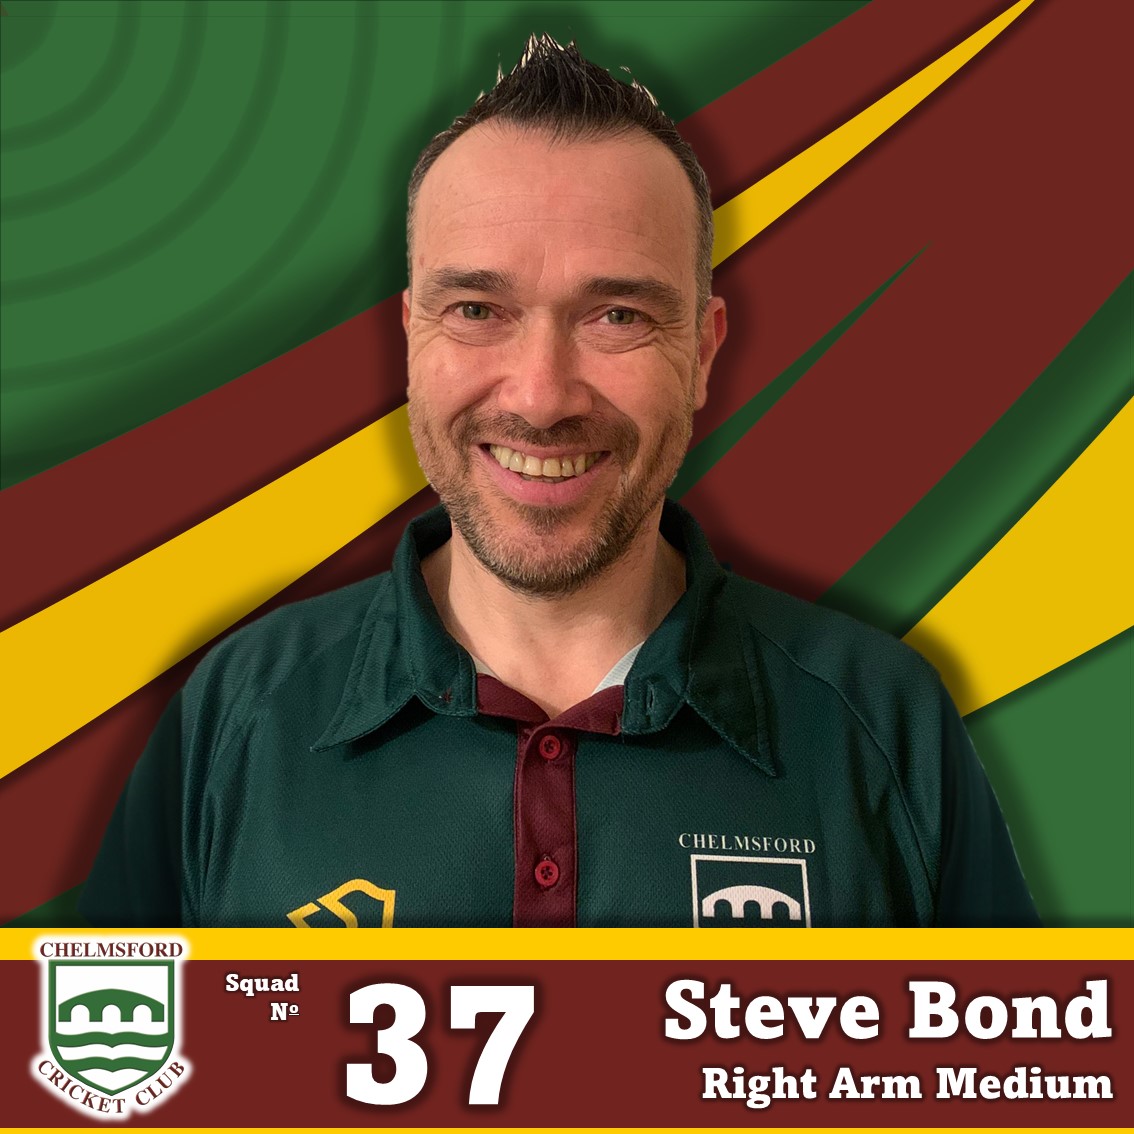 Steve Bond